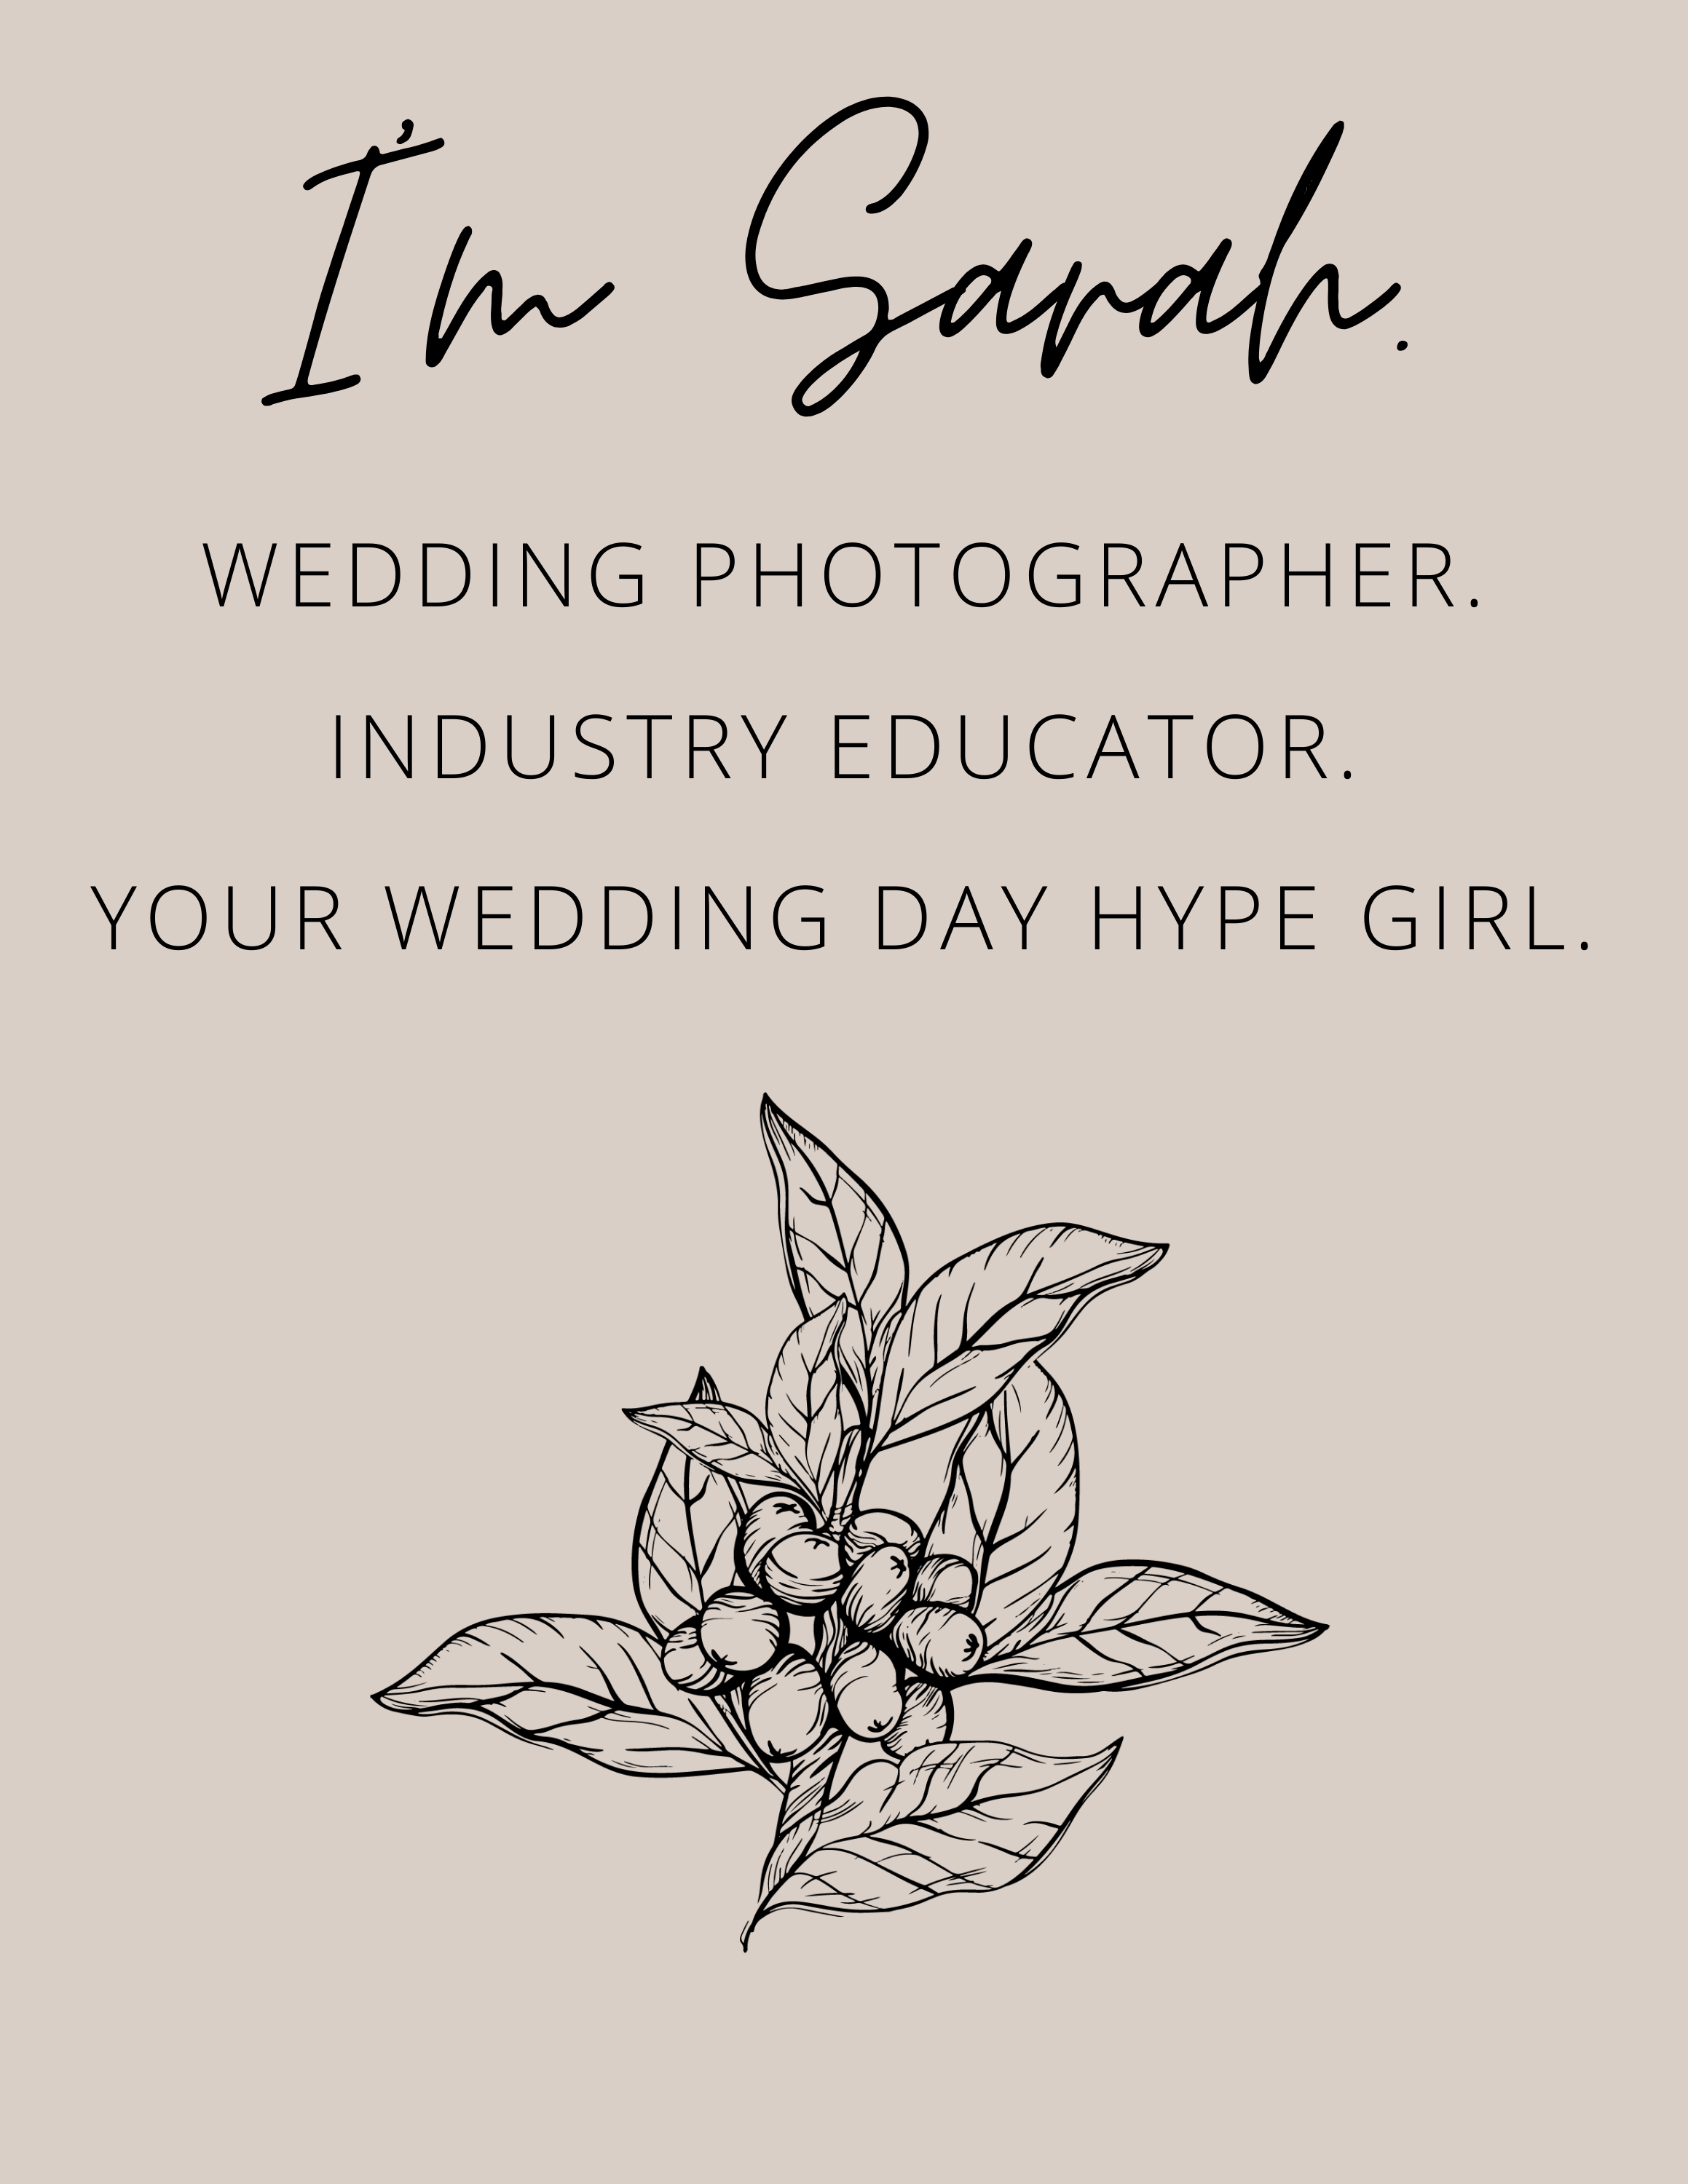 sarah-brookhart-wedding-photographer-educator.png